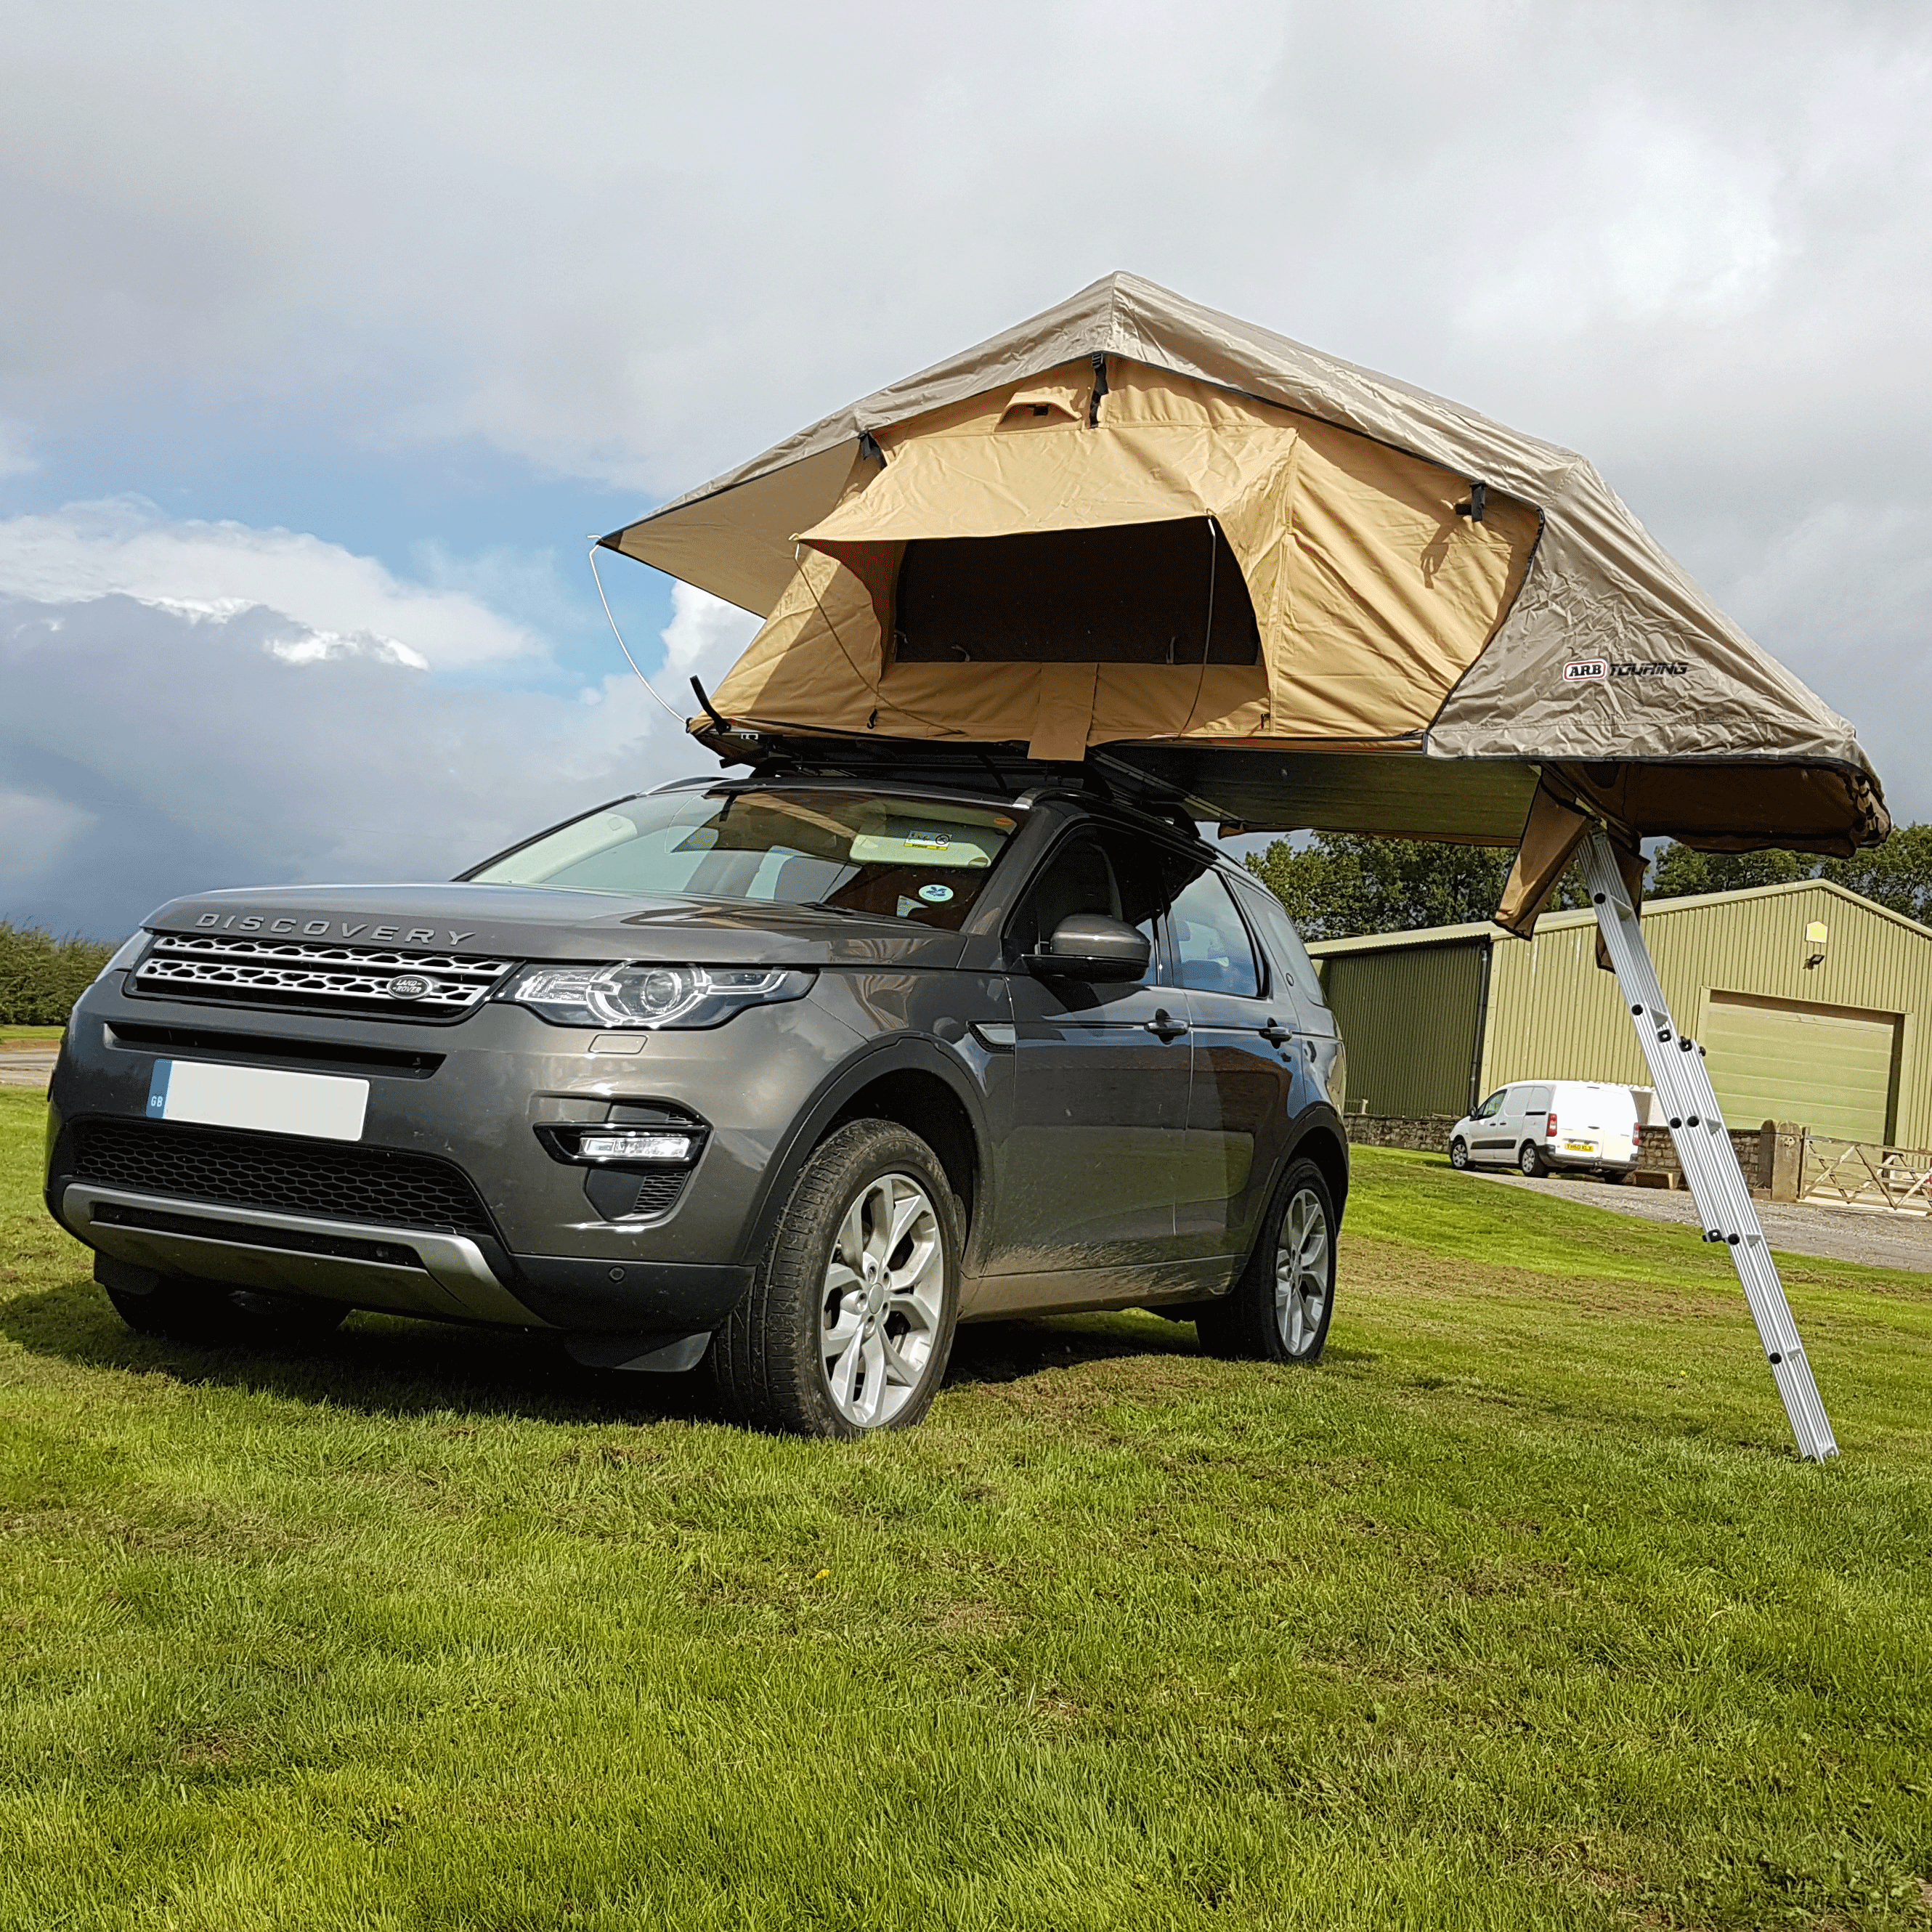 Дискавери крыша. Альпийская крыша Дискавери 3. Палатка в Land Rover Discovery 4. Дискавери 4 крыша в пленке. Палатка ARB Simpson Camp.